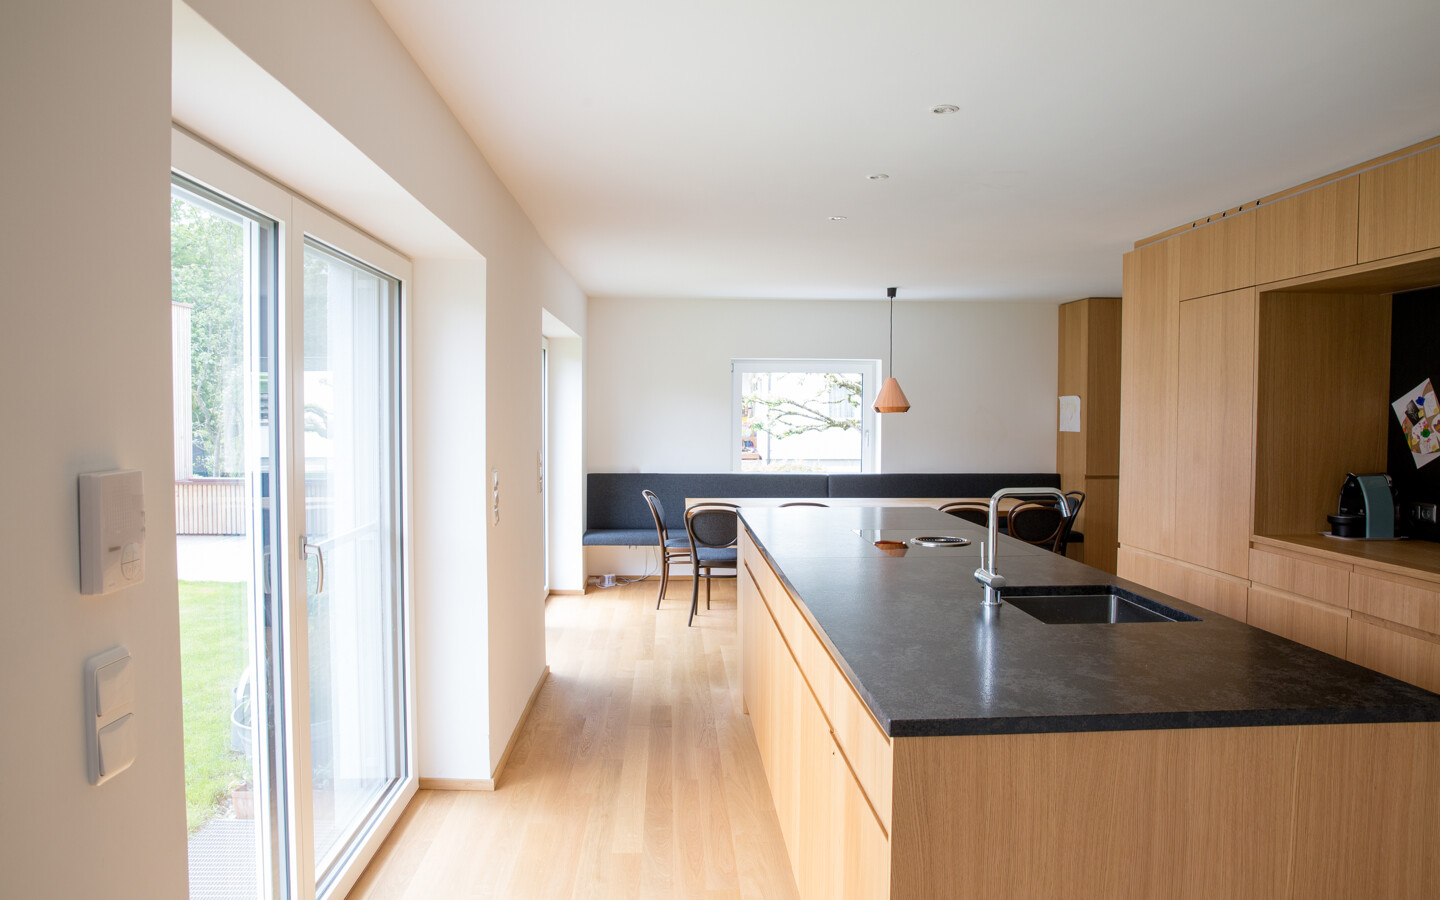 Umbau Einfamilienhaus Greussing-Pallavicini Küche mit Holzausstattung und Balkonfenster nach draußen